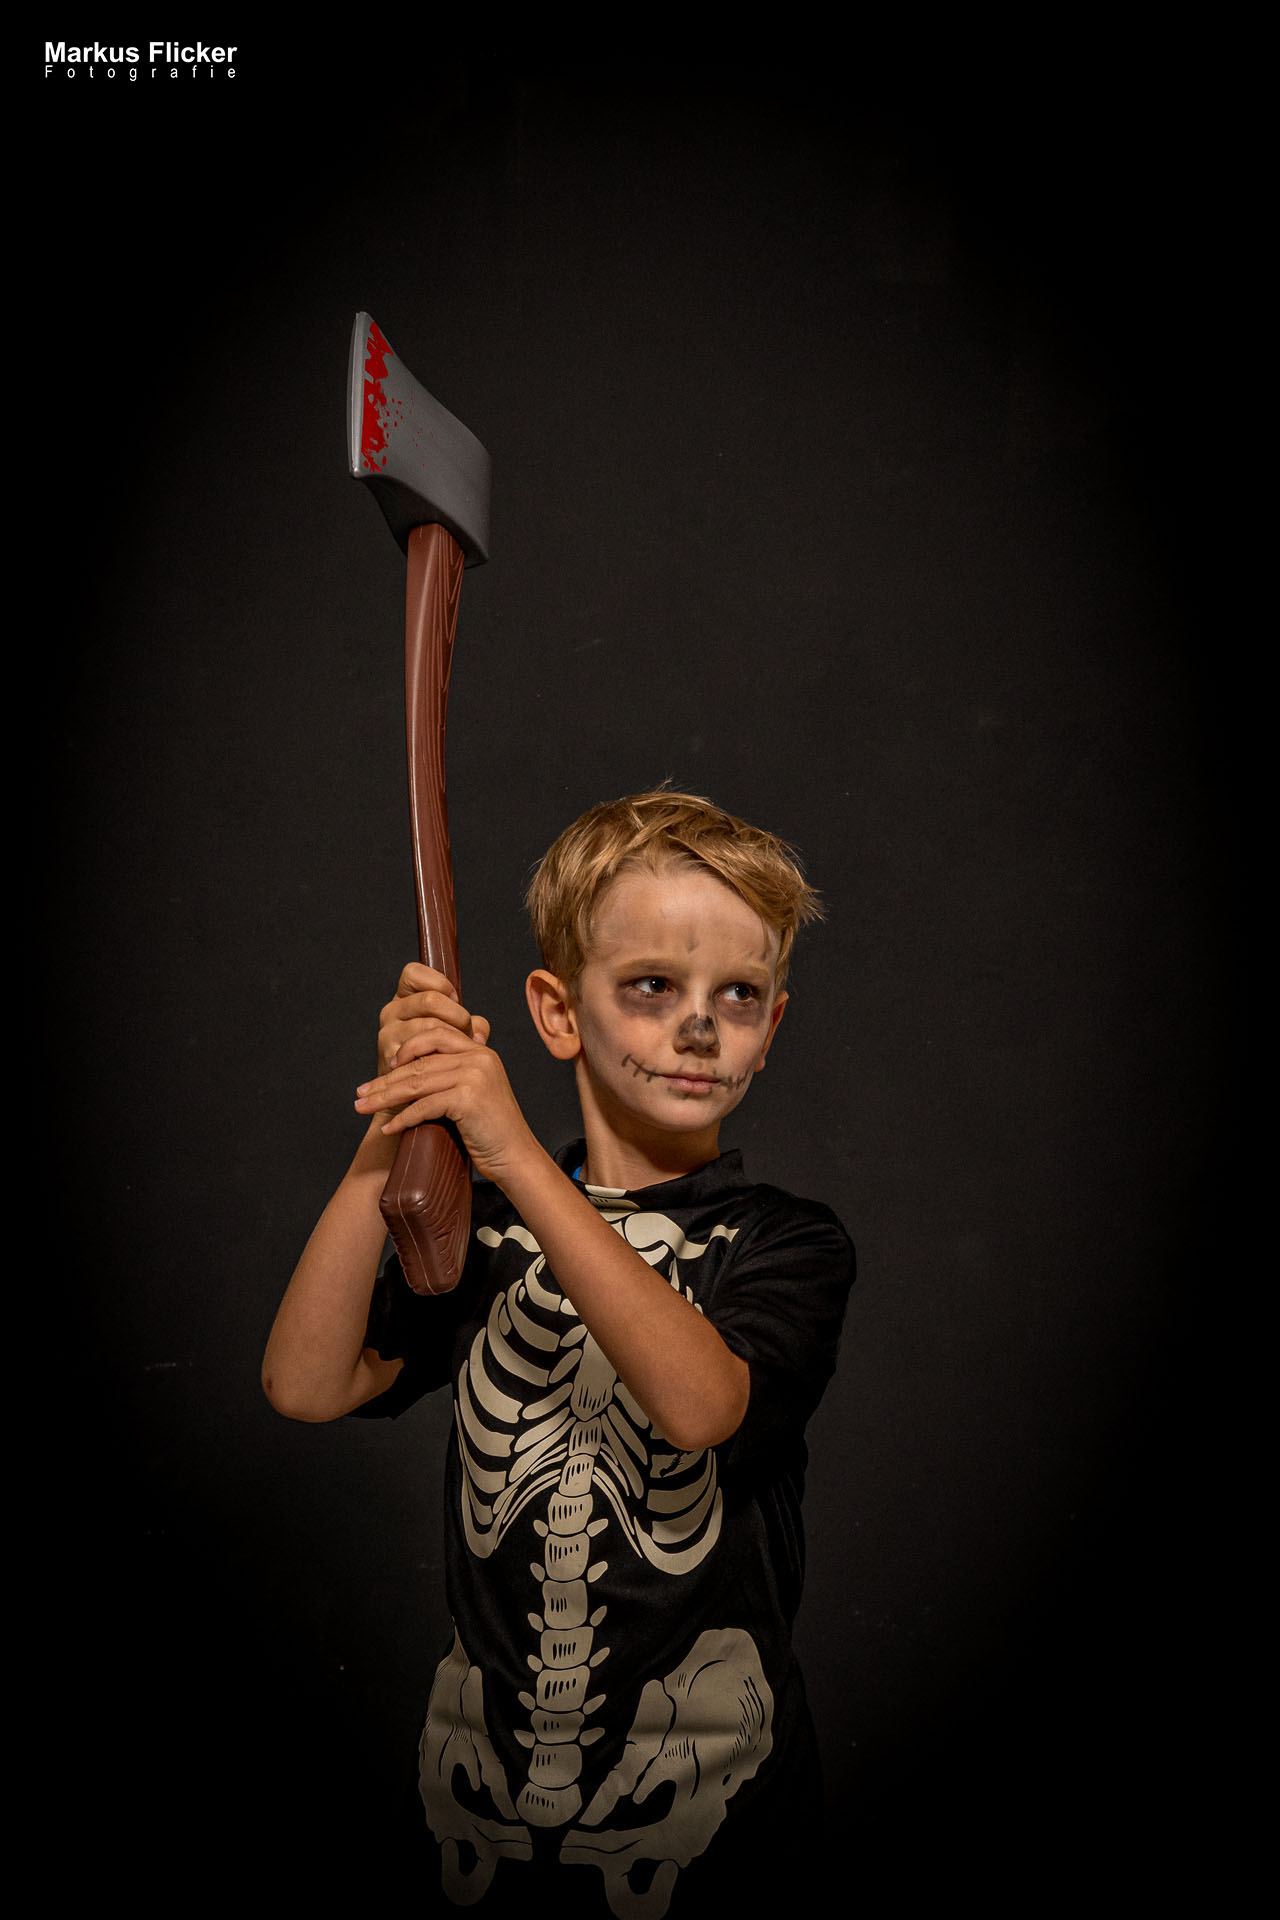 Fotoshooting Halloween im Fotostudio Bildideen Bildbearbeitung Hexen, Geister, Zombies, Clowns, Vampire mit Kinder und Erwachsene… Adobe Photoshop